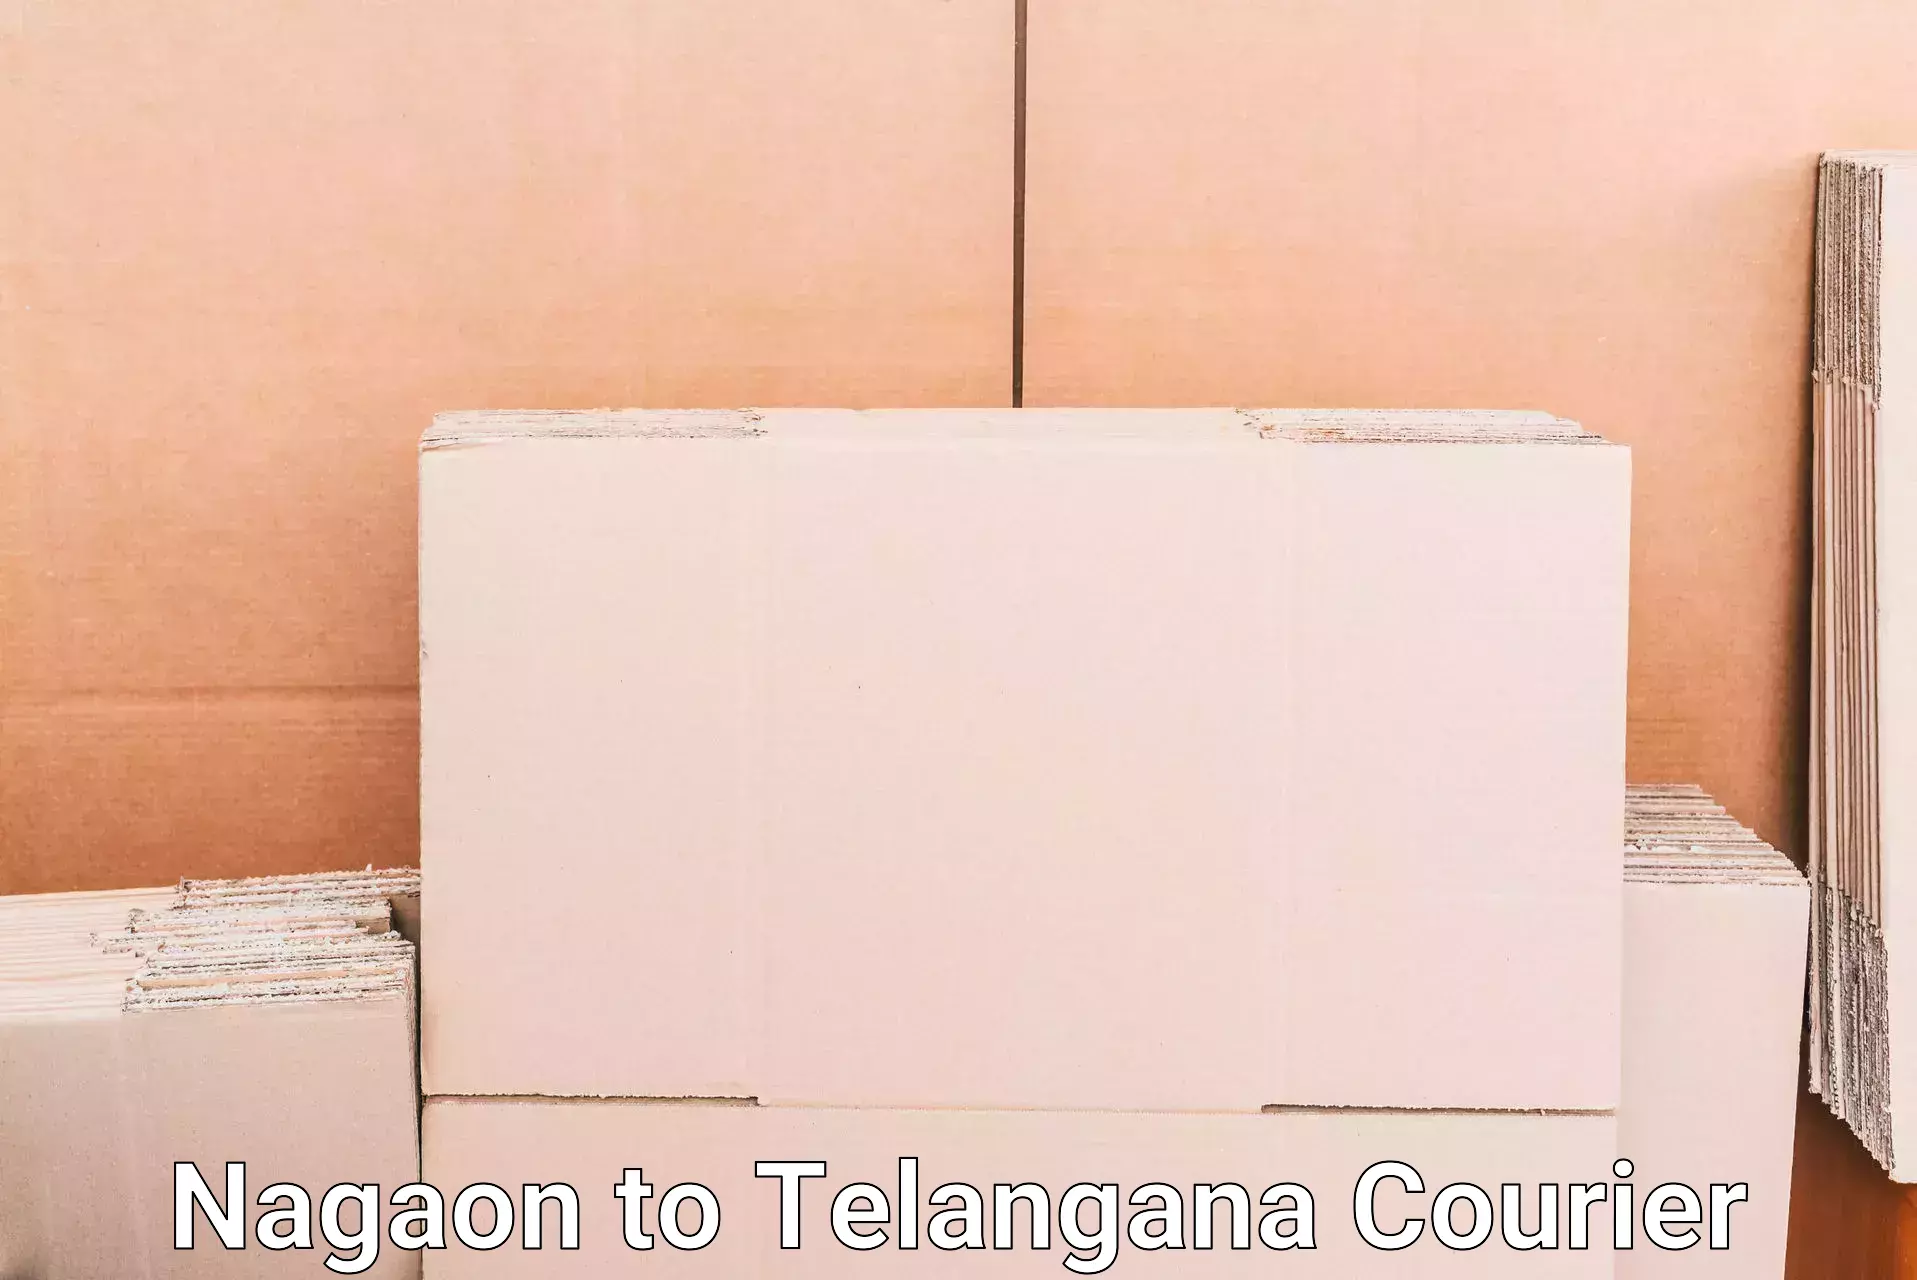 Luggage transport company Nagaon to Kothagudem